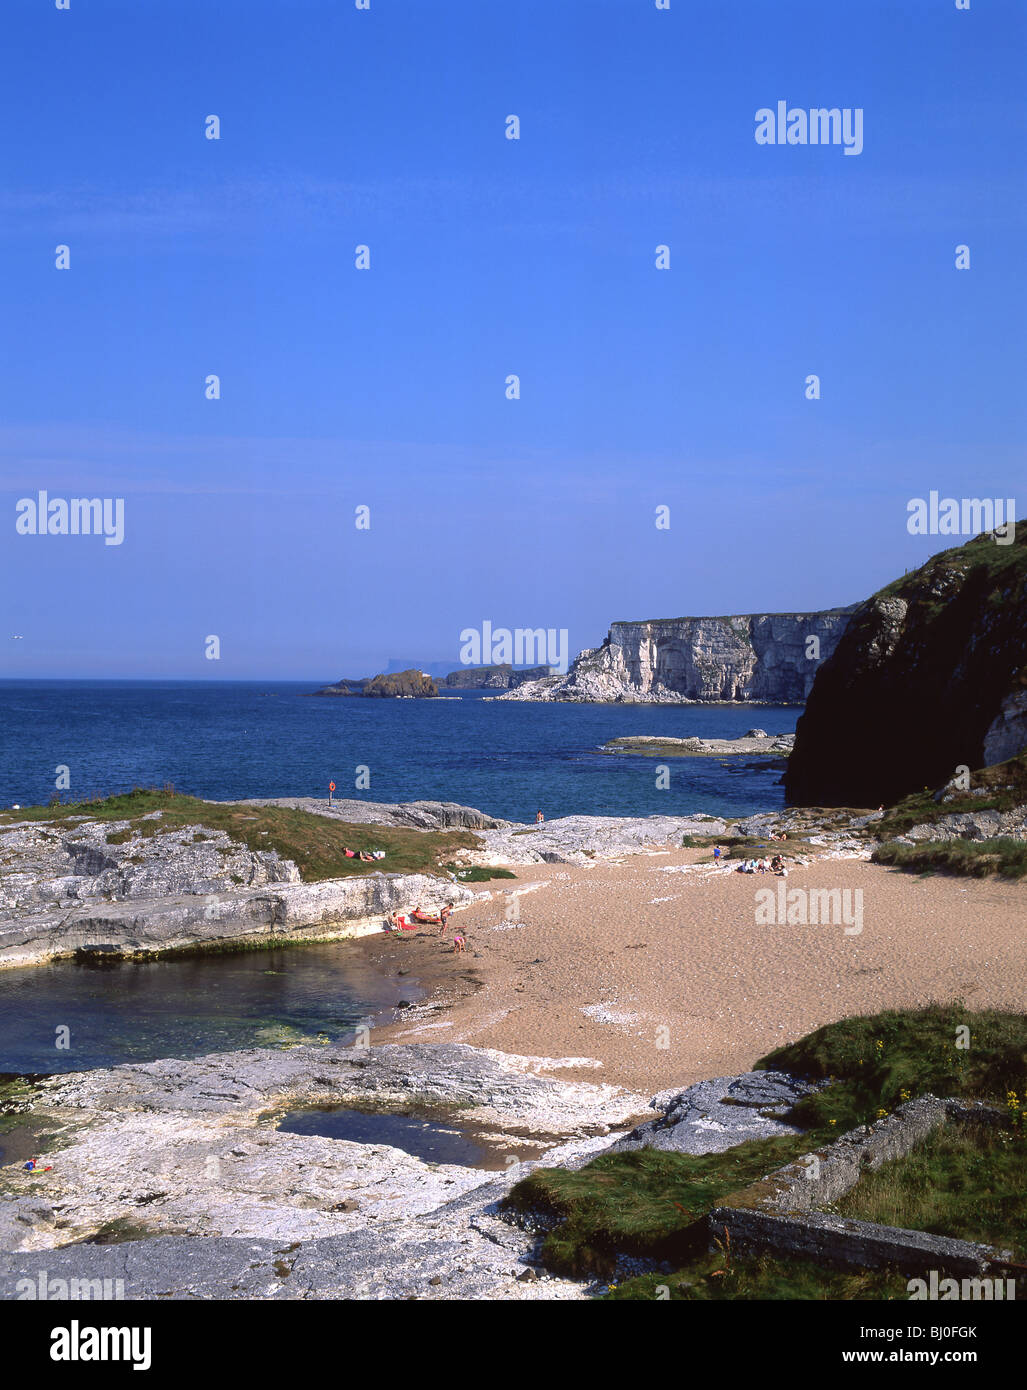 Escena de las playas y costas, La Costa Causeway, Irlanda del Norte, Reino Unido Foto de stock